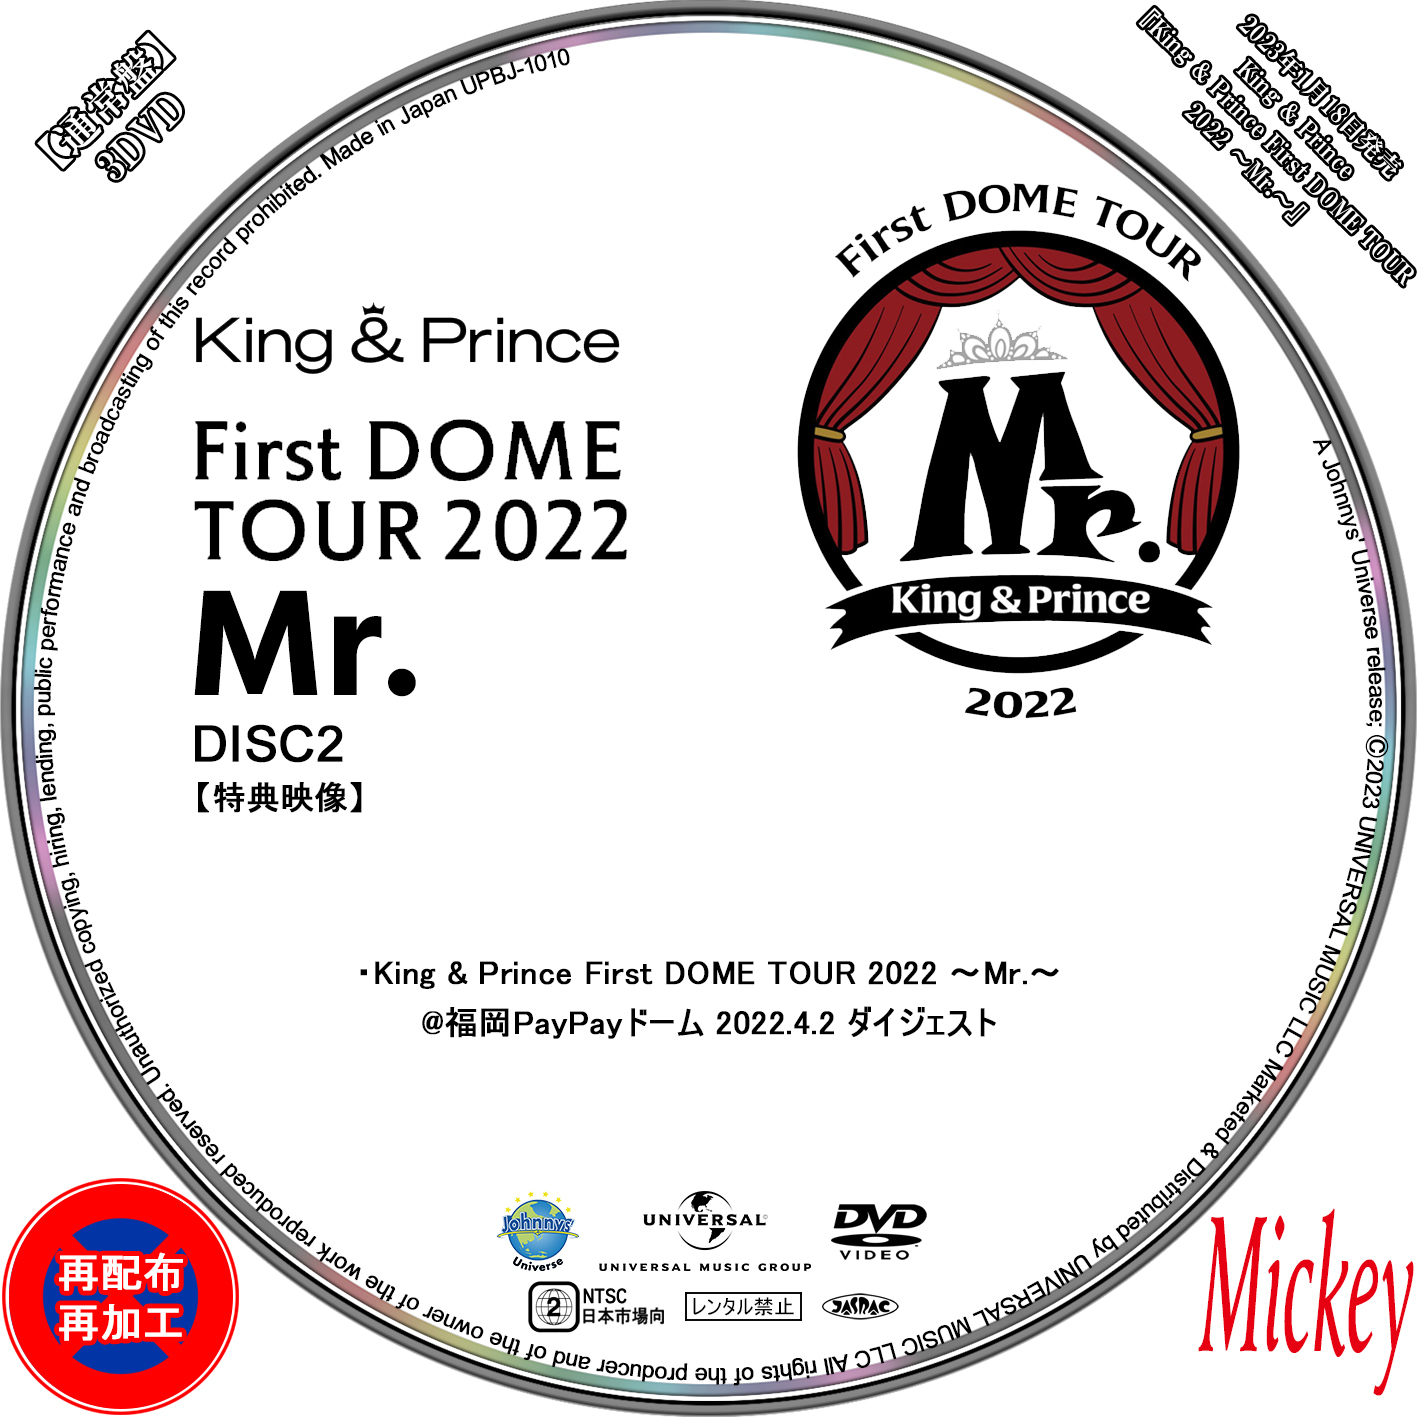 偉大な DOME Prince & 先着特典 King TOUR ～Mr. 2022 ミュージック 